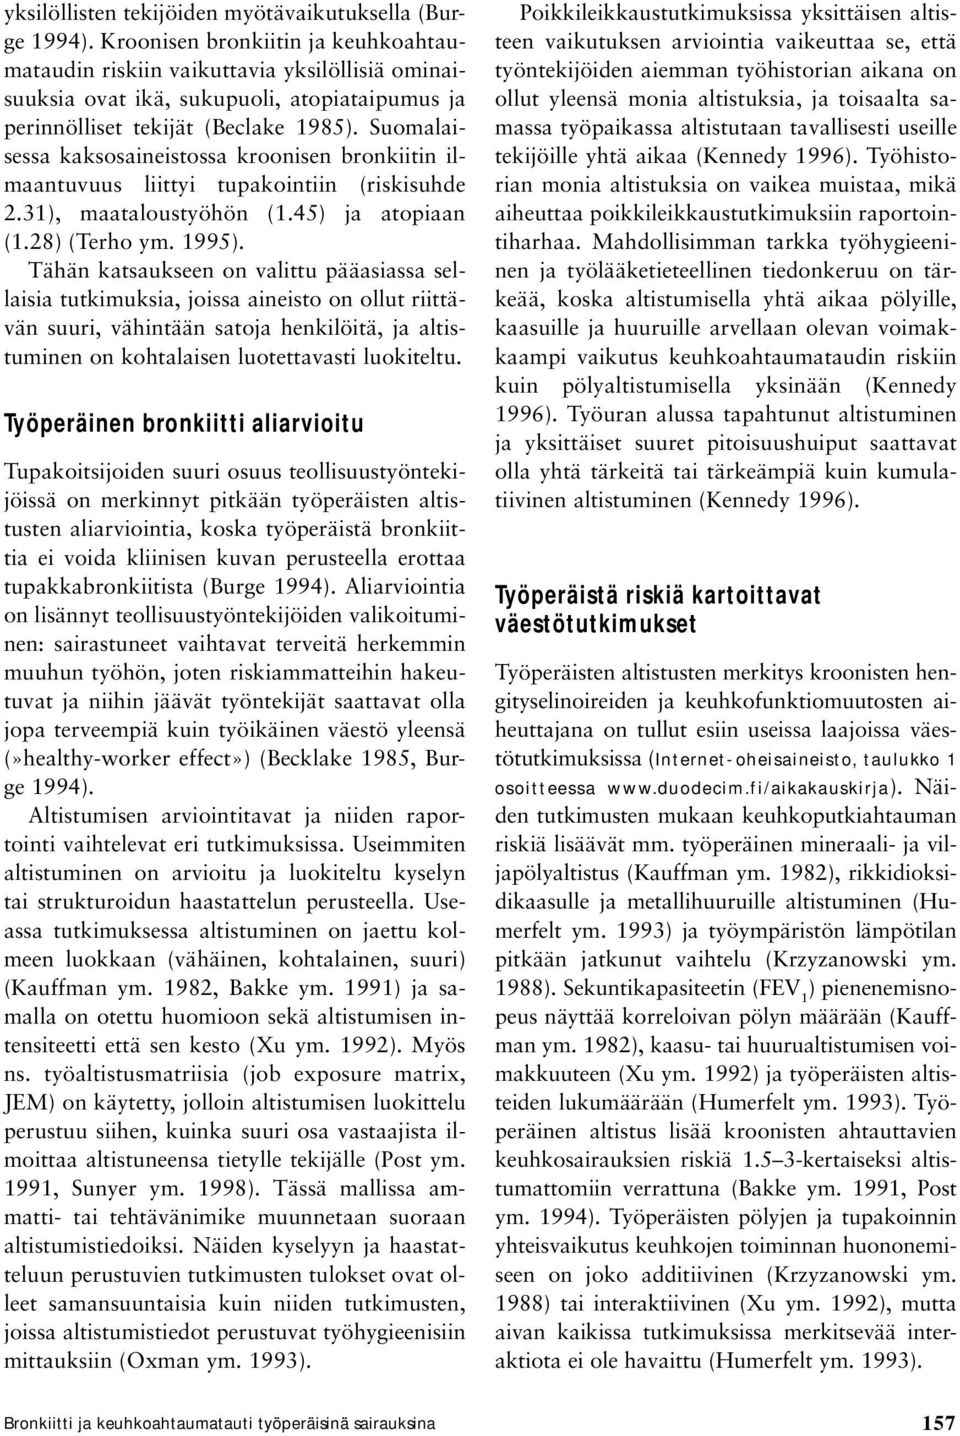 Suomalaisessa kaksosaineistossa kroonisen bronkiitin ilmaantuvuus liittyi tupakointiin (riskisuhde 2.31), maataloustyöhön (1.45) ja atopiaan (1.28) (Terho ym. 1995).